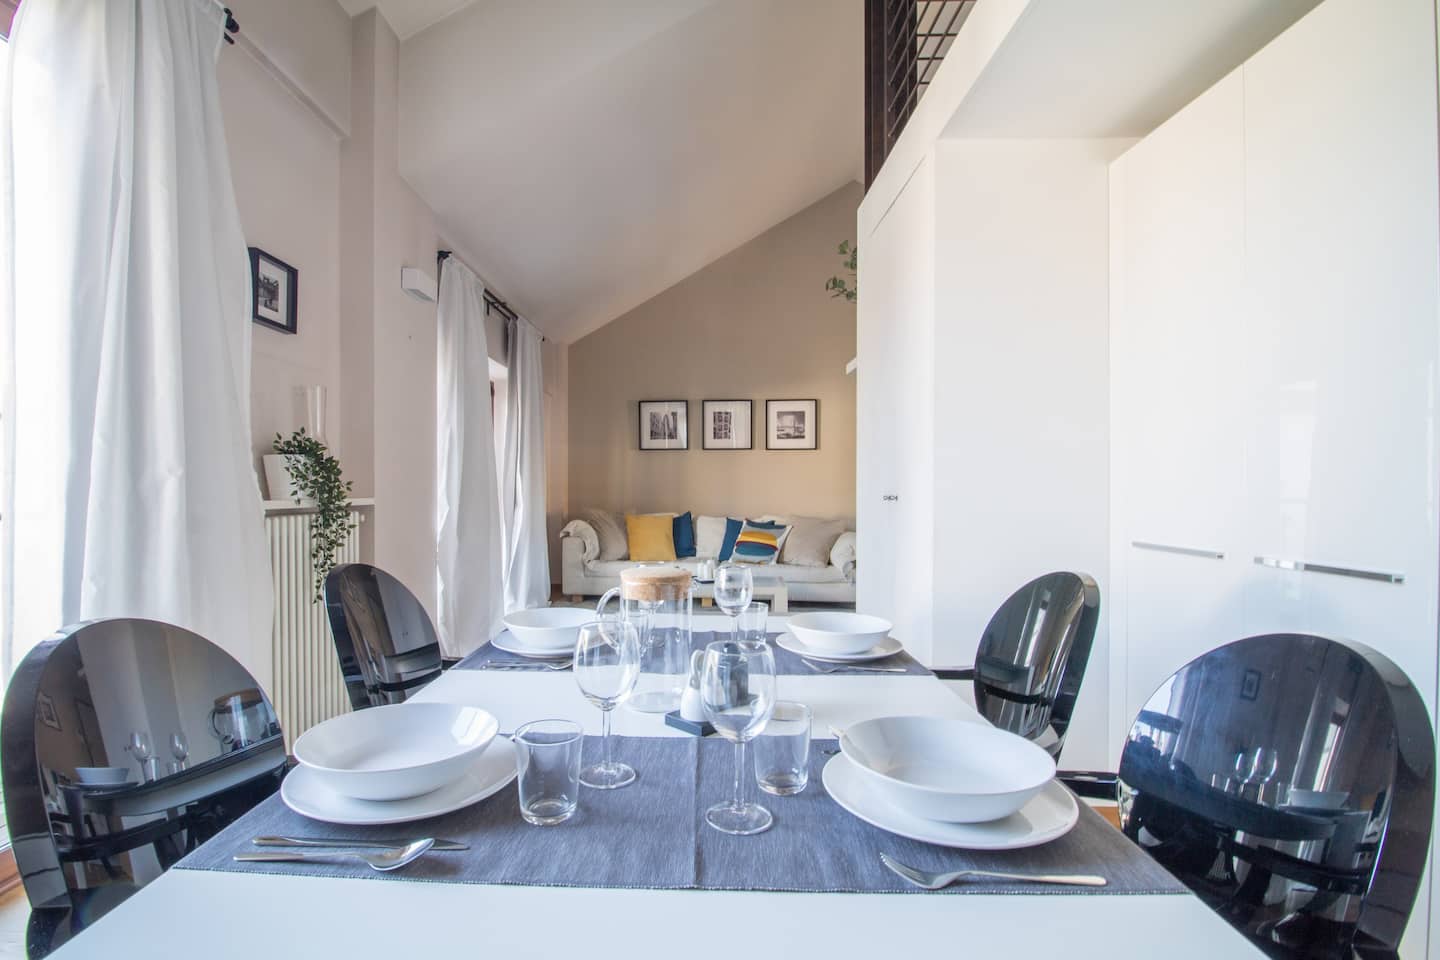 Table à manger dans la cuisine de la maison La La Land, l'appartement Vayadù à Genola.